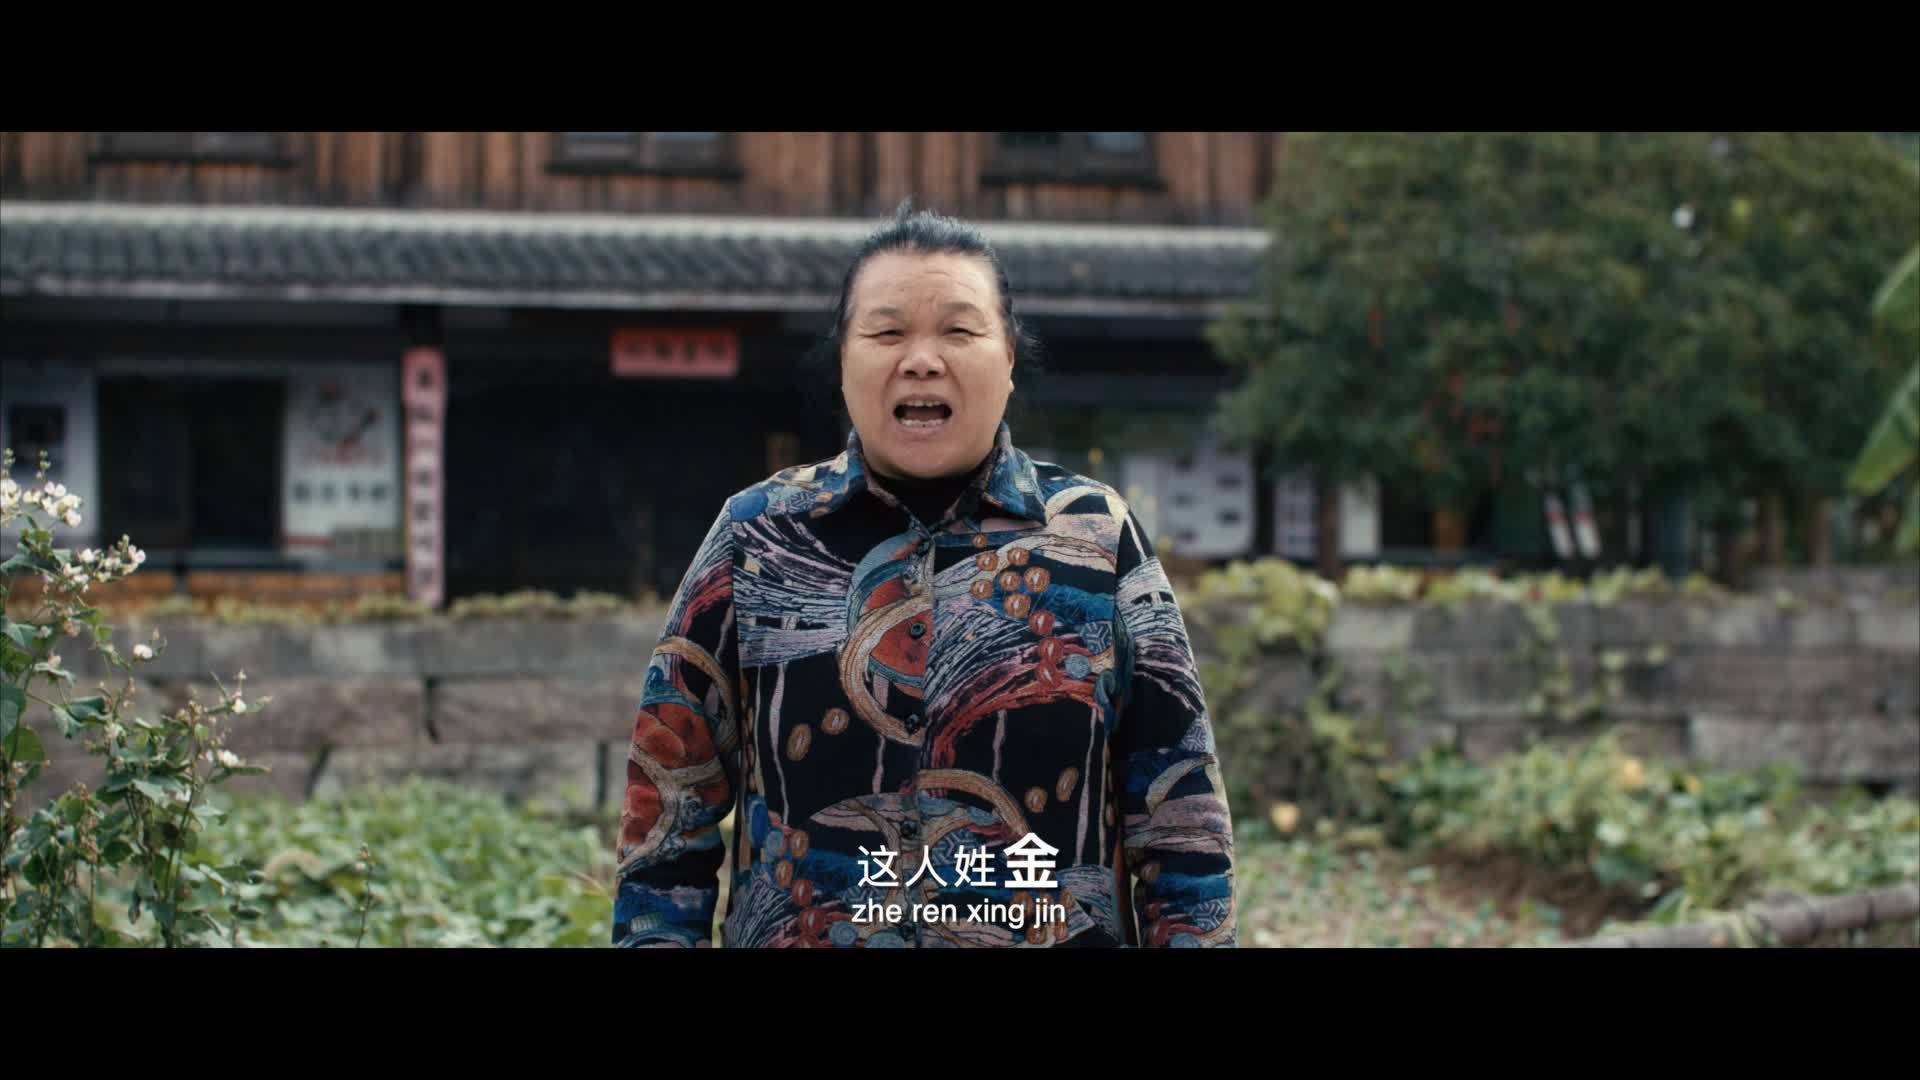 台州交警方言微电影《金百晓2》